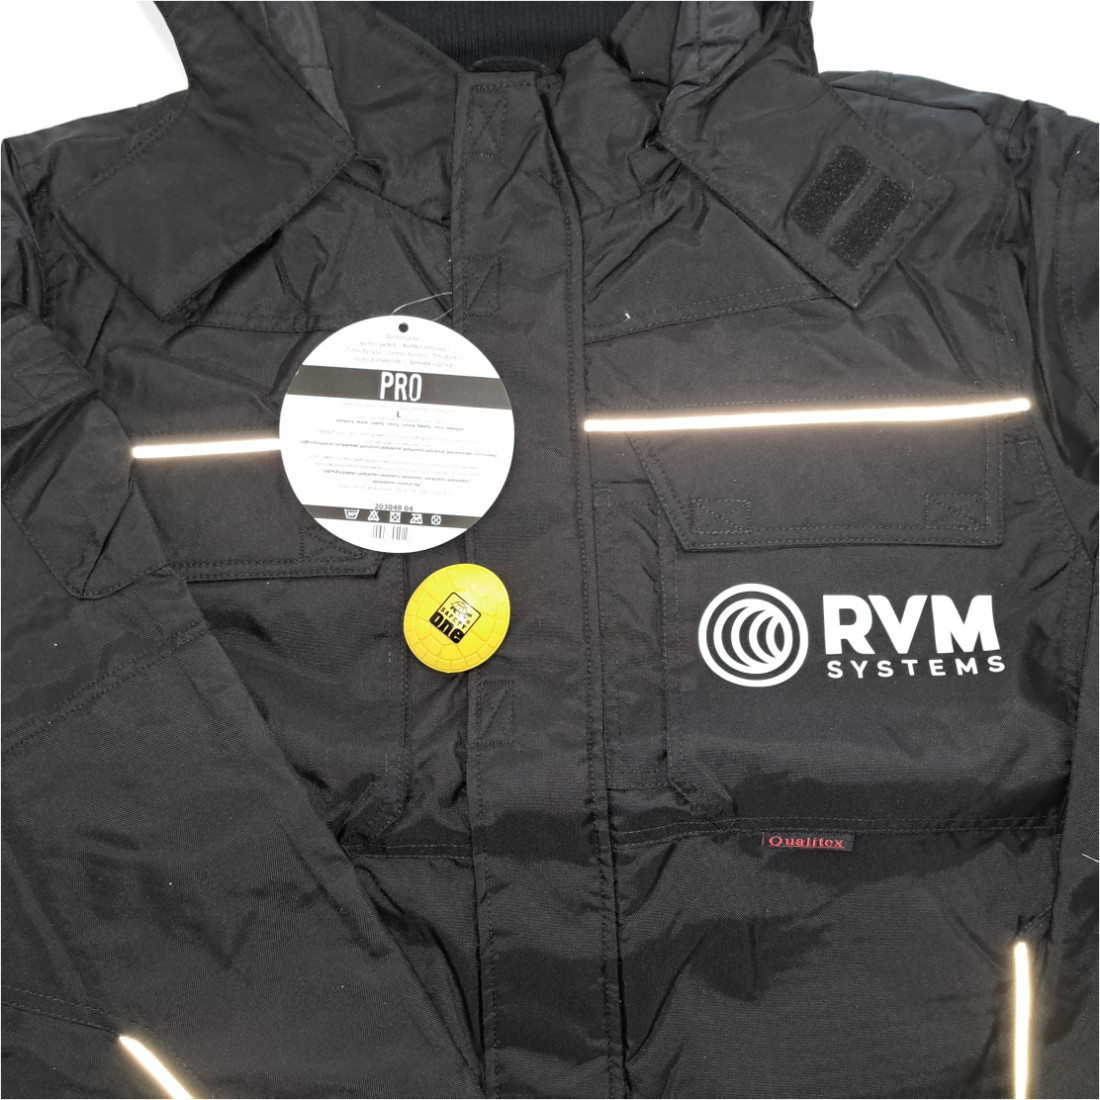 PRO Winter Jacket - Safetywear